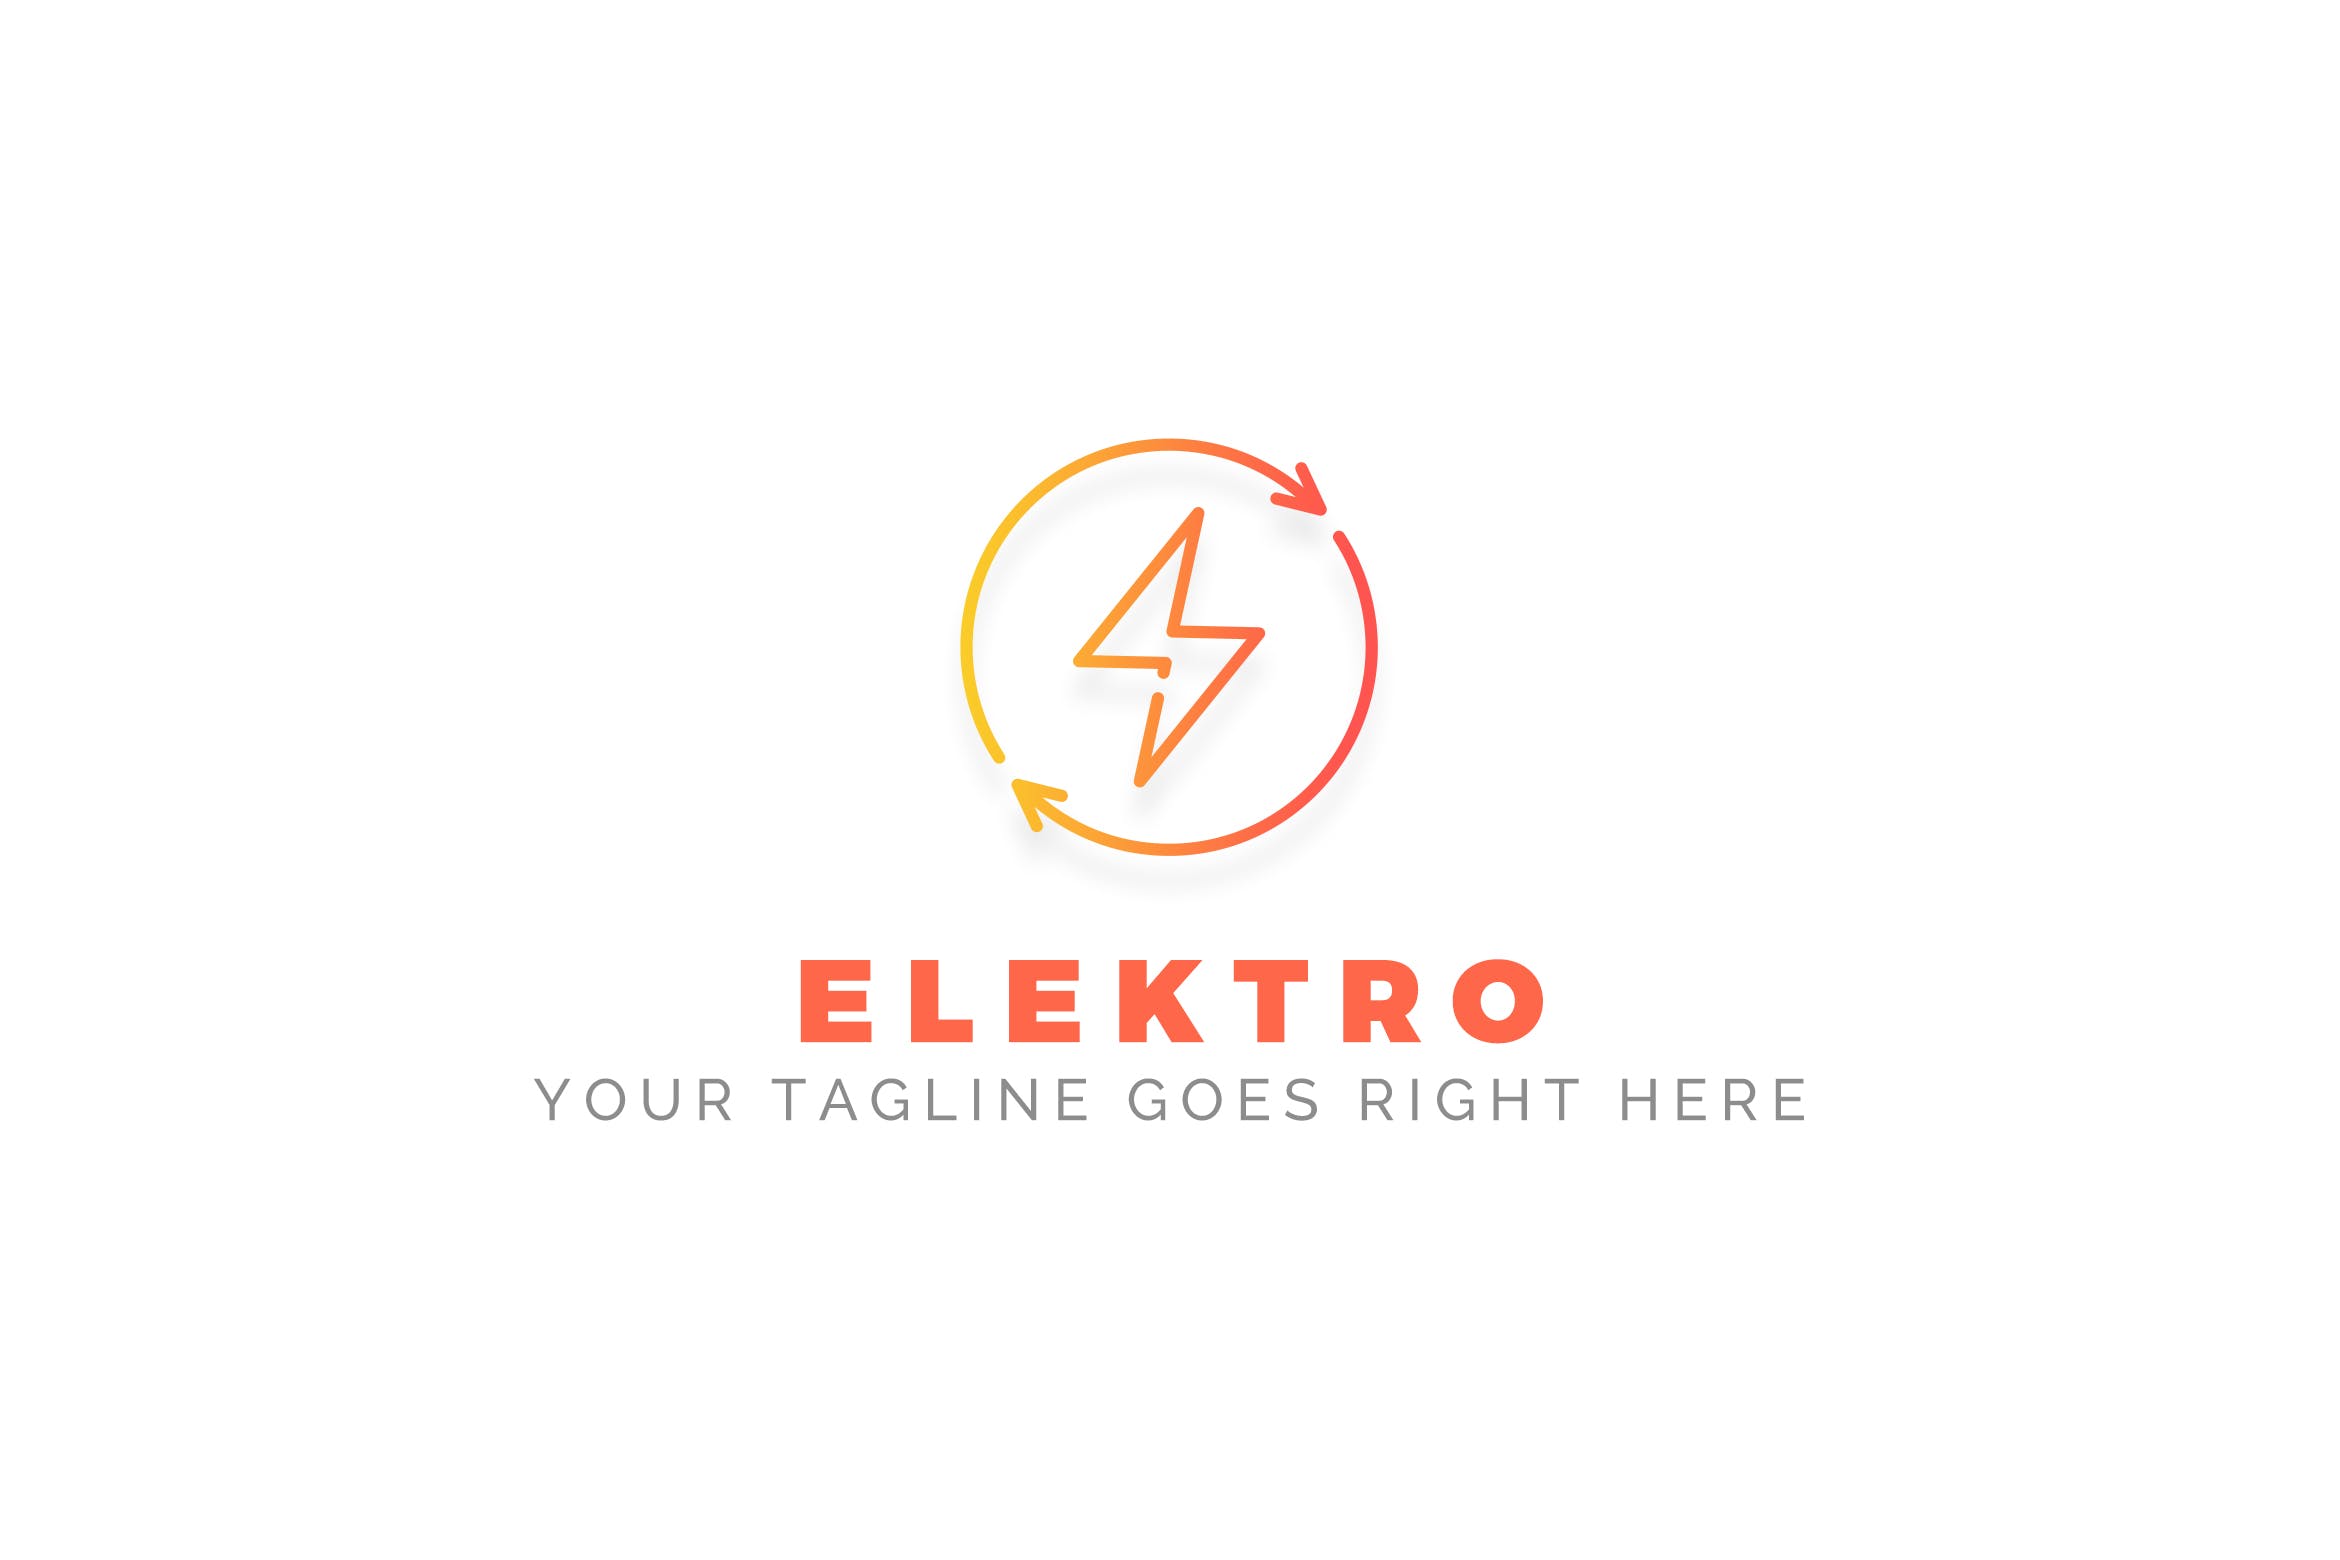 充电宝/移动电源/充电设备品牌Logo设计素材库精选模板 Elektro – Electrician Logo Template插图